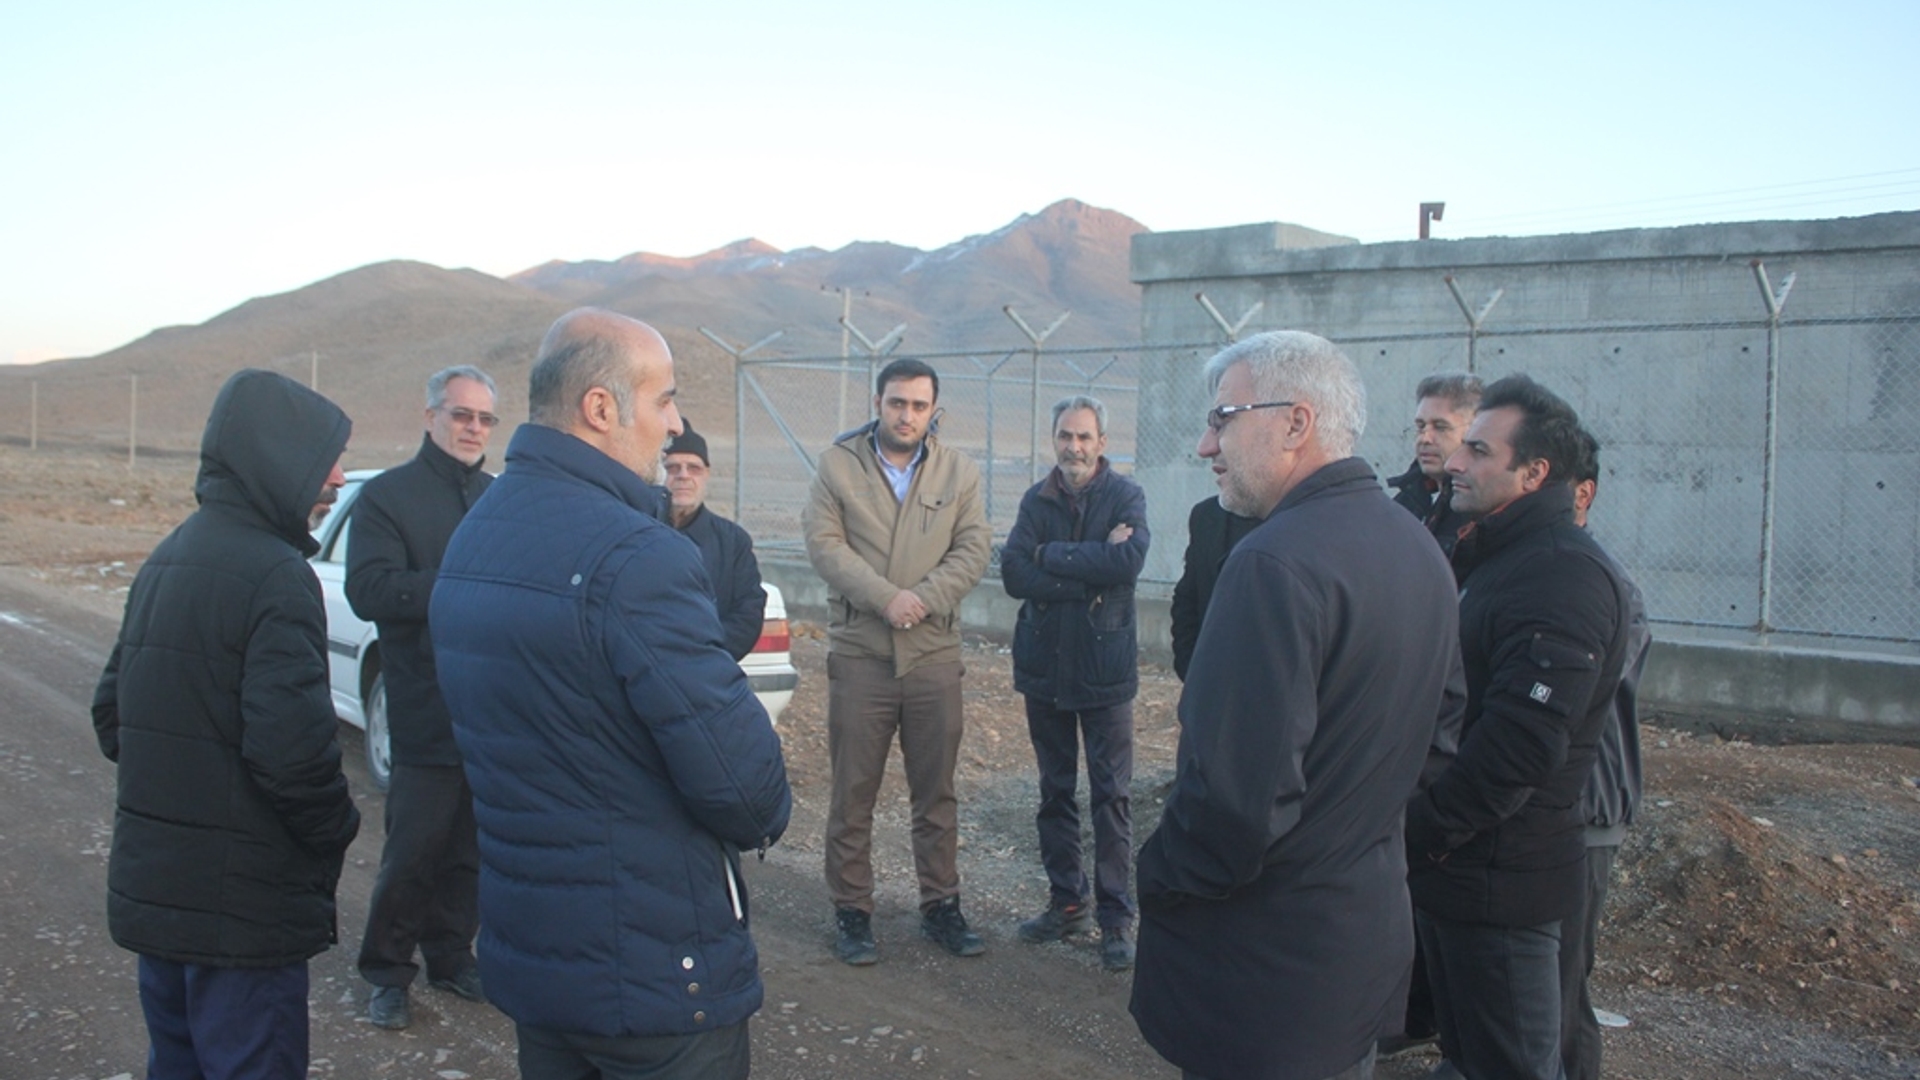 فرماندار از تعدادی از رو ستاهای بخش مرکزی خمین بازدید کرد